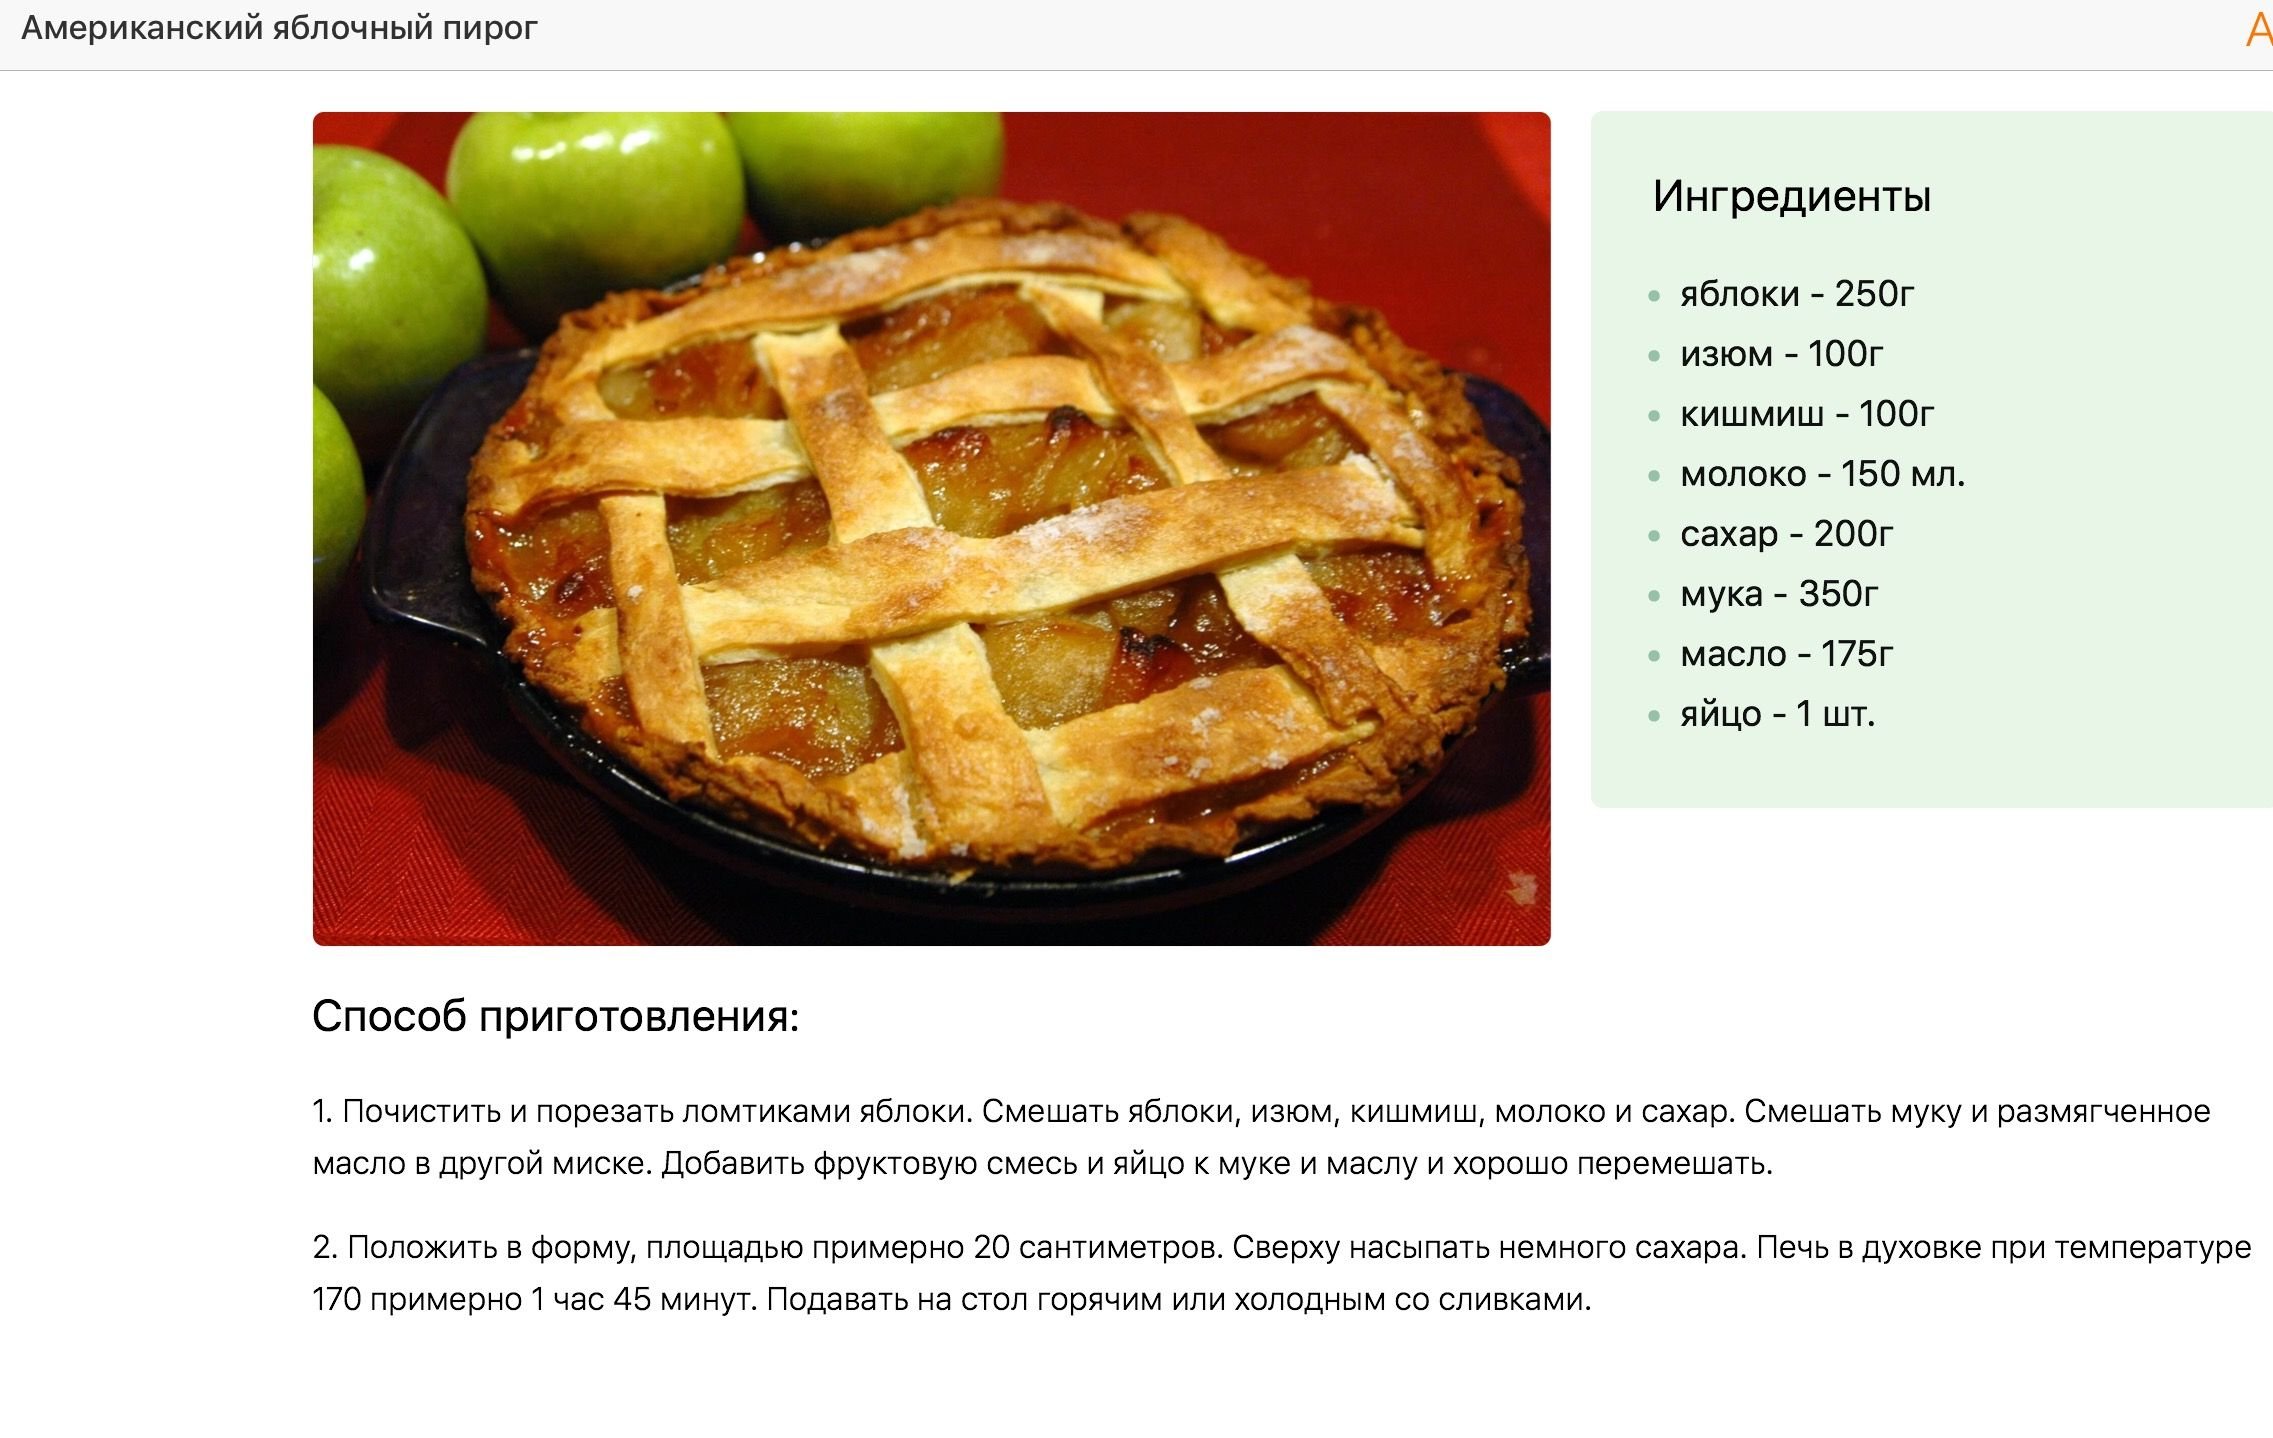 Пирог составить слова. Пирог. Яблочный пирог. Рецепт пирога в картинках. Приготовление яблочного пирога в картинках.